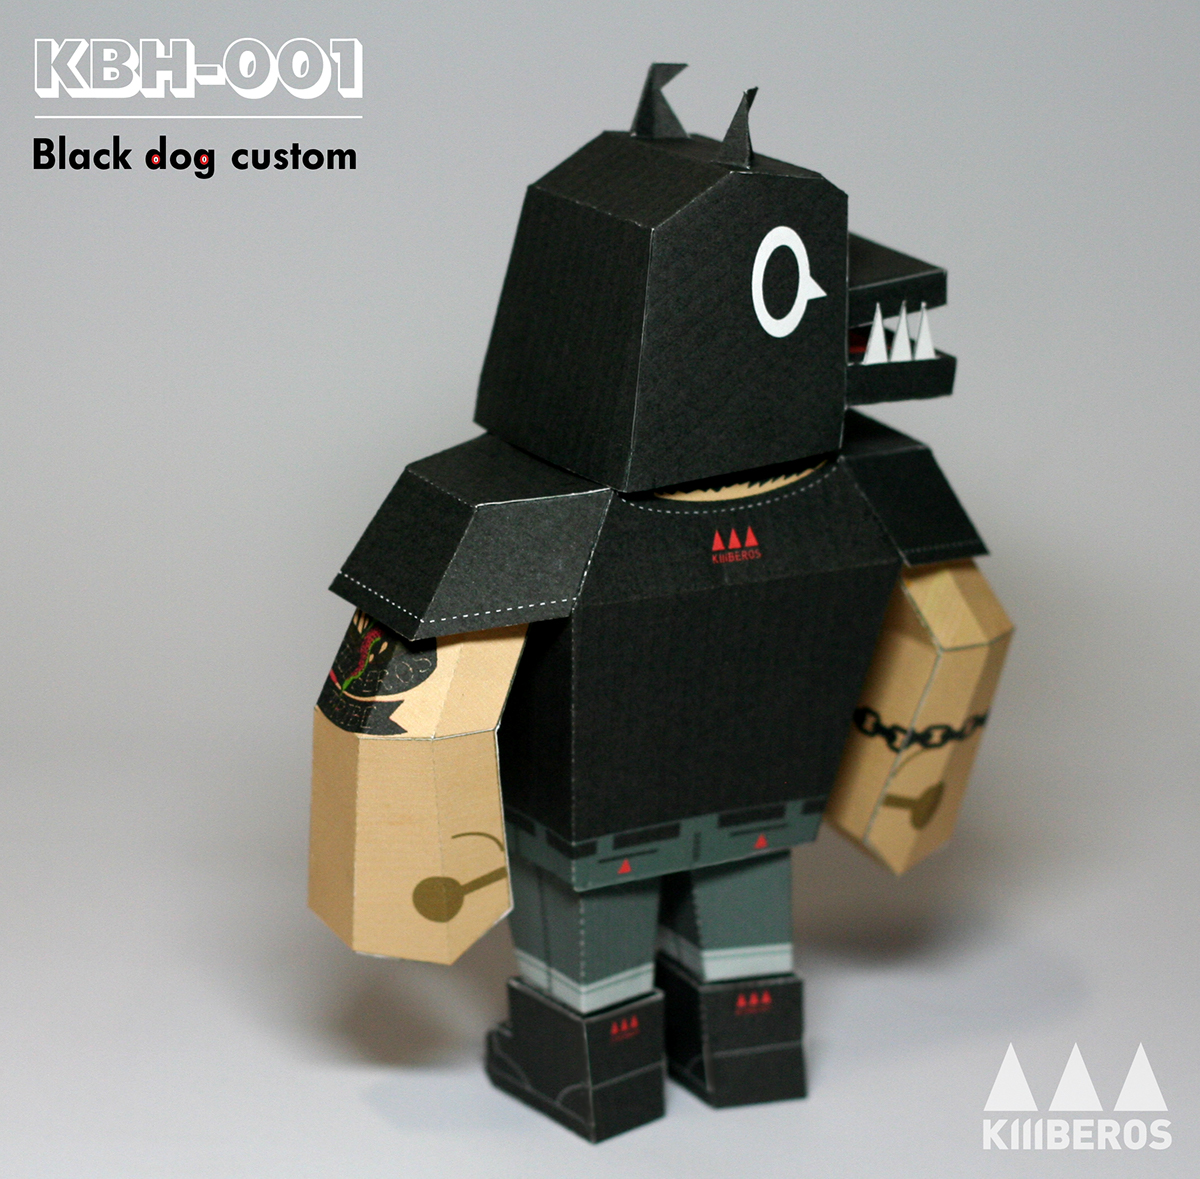 killberos papertoy killb-001  kbh-001 killberos 2013 s/s black dog t-shirt